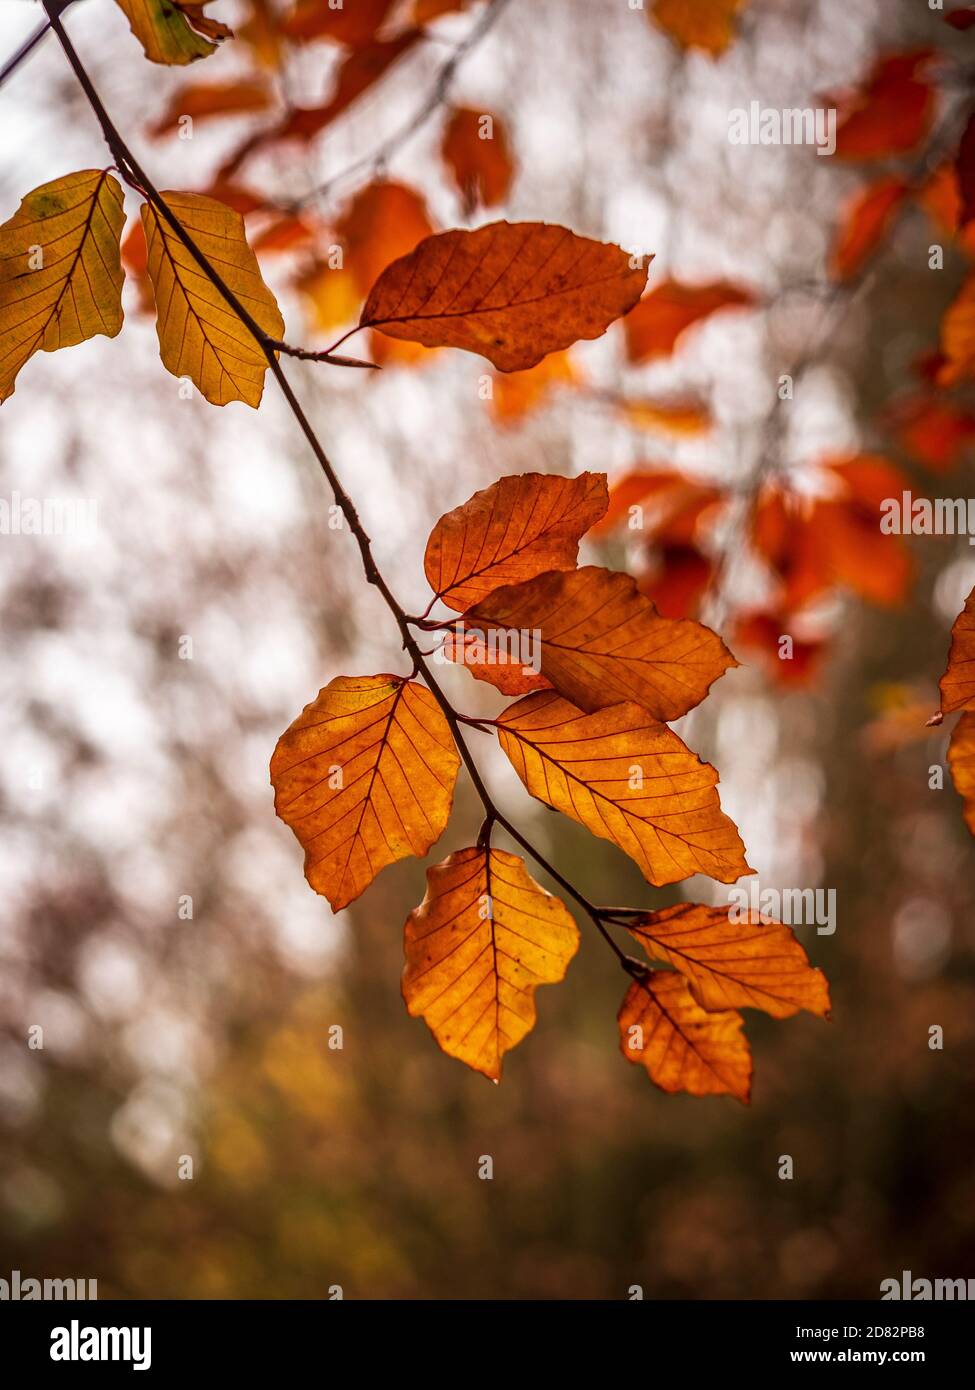 Gros plan de feuilles d'arbre Beech dorées et rétroéclairées en automne. Banque D'Images